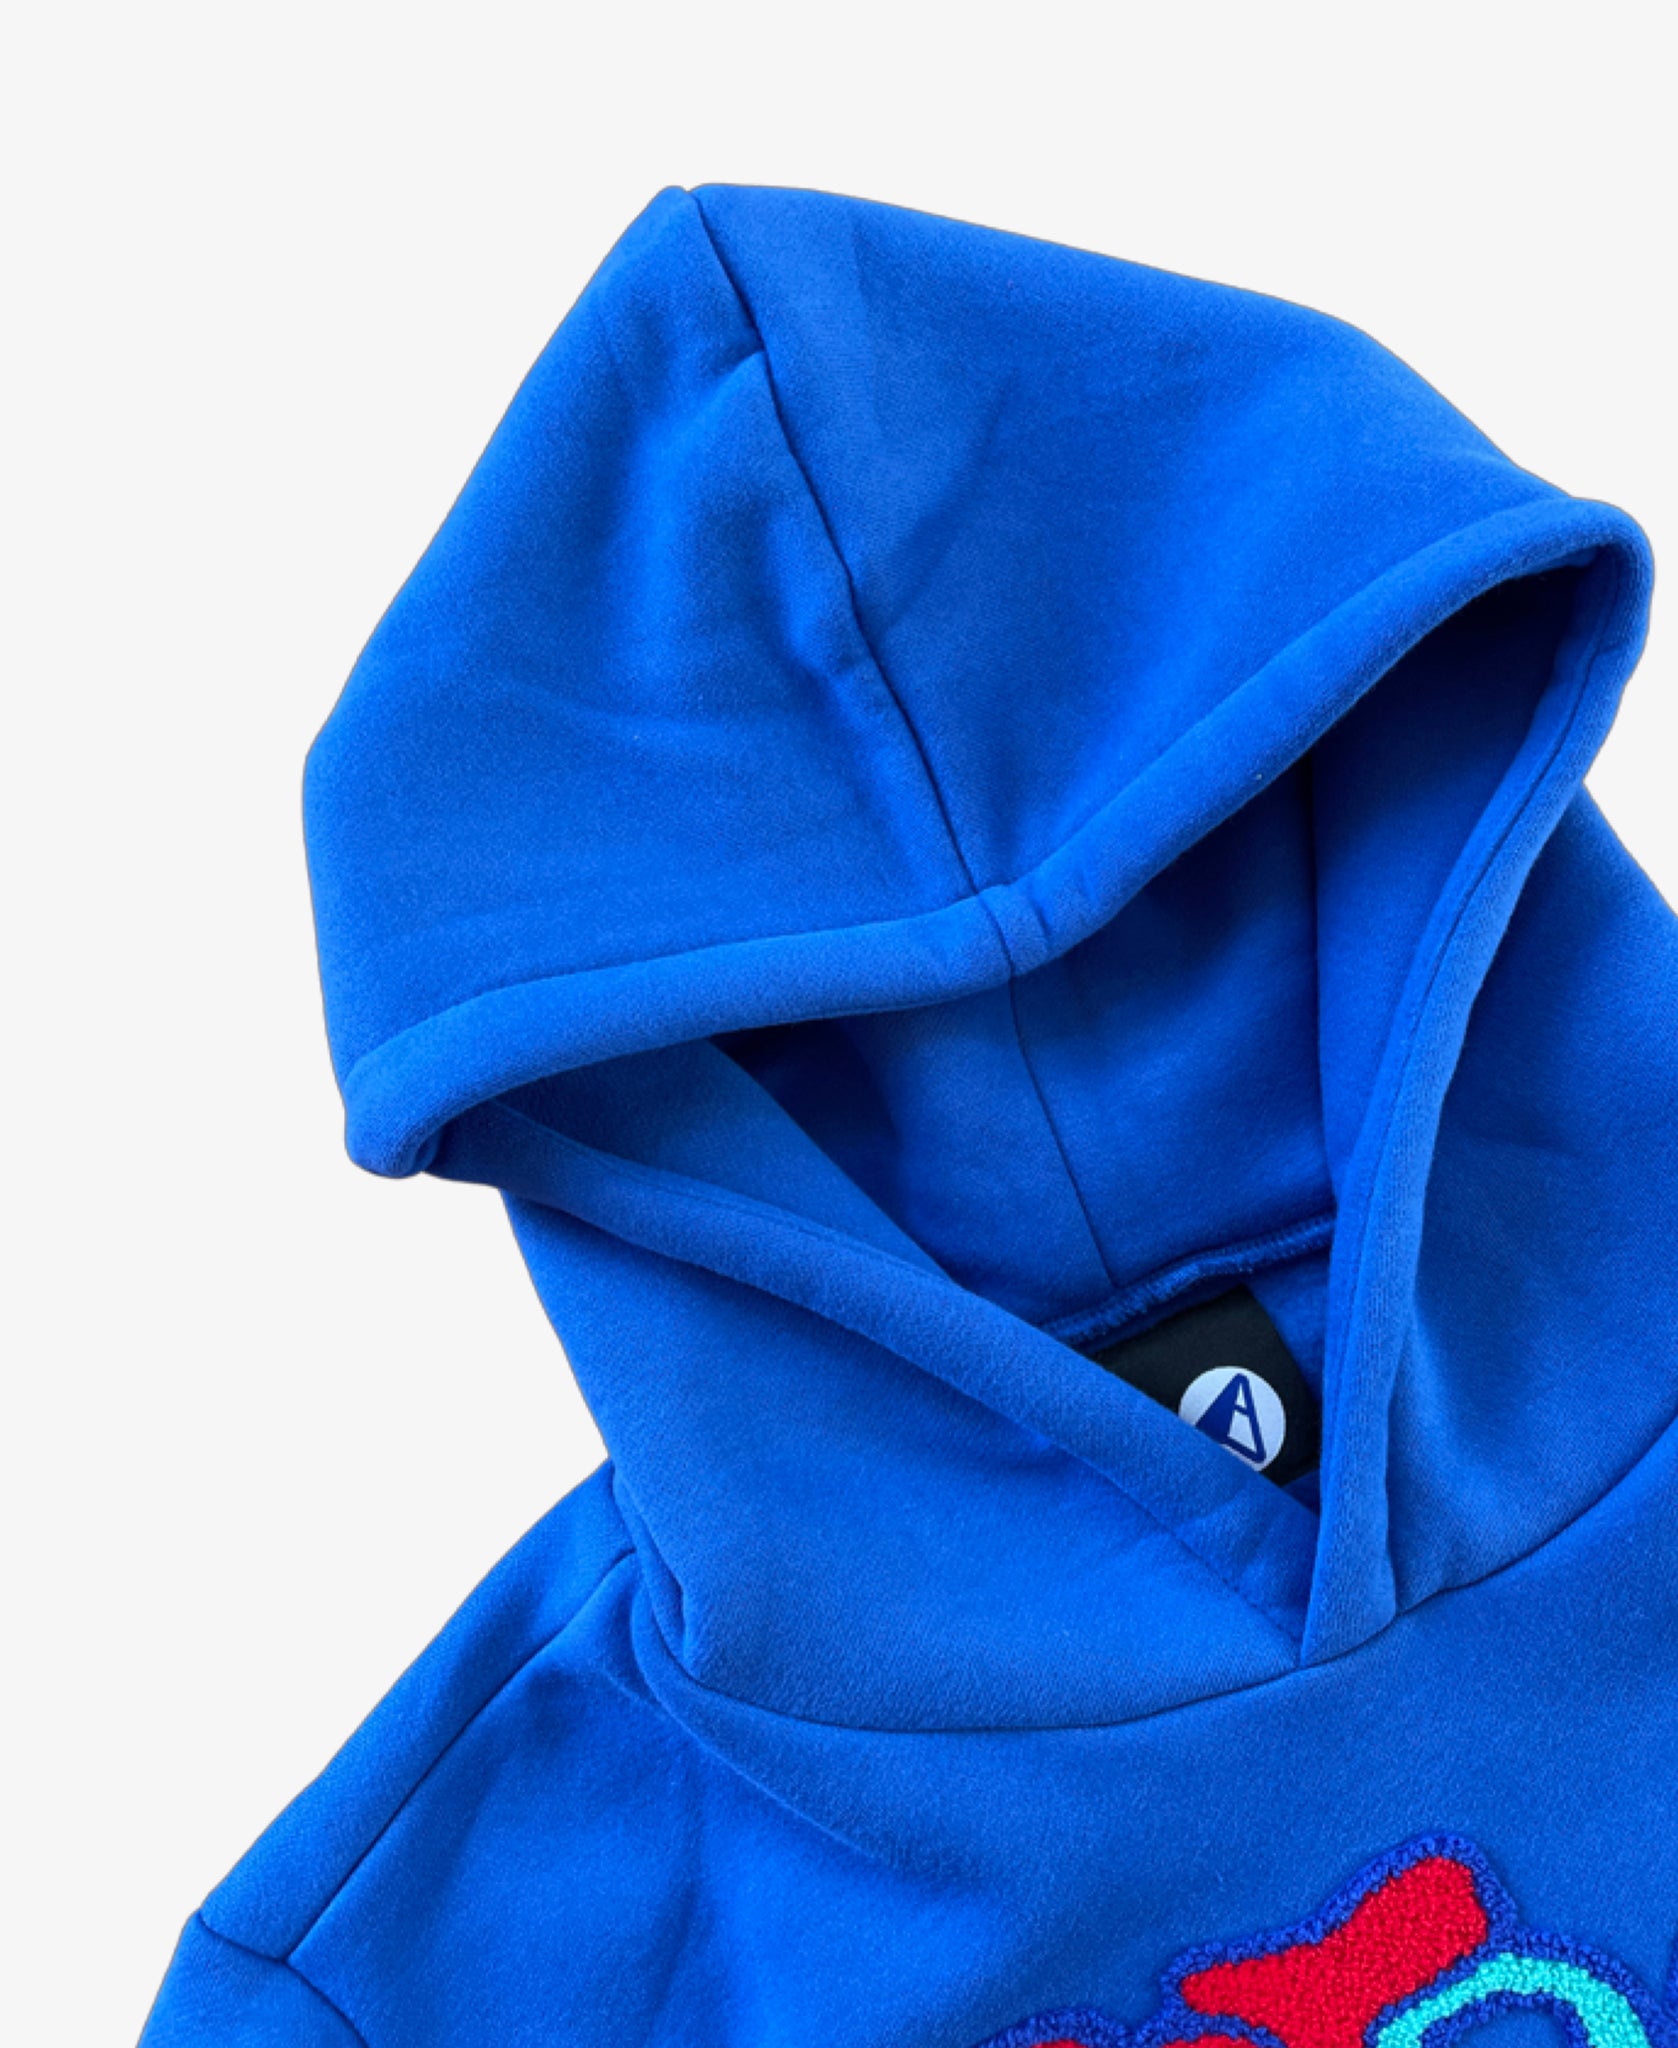 Fluid motion hoodie - Blue